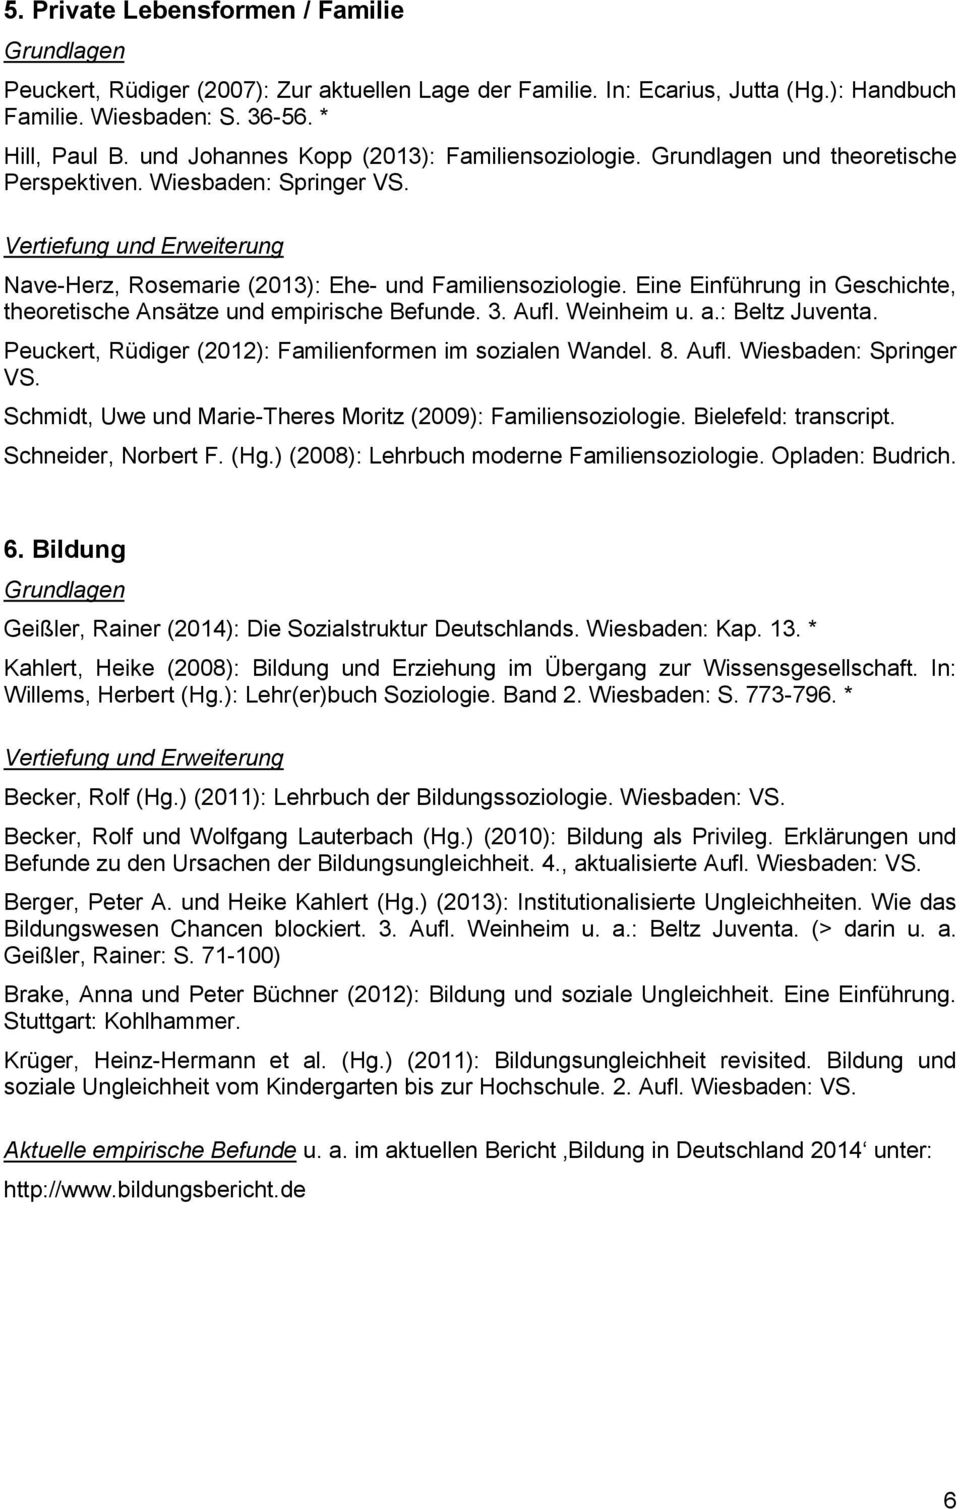 Eine Einführung in Geschichte, theoretische Ansätze und empirische Befunde. 3. Aufl. Weinheim u. a.: Beltz Juventa. Peuckert, Rüdiger (2012): Familienformen im sozialen Wandel. 8. Aufl. Wiesbaden: Springer VS.